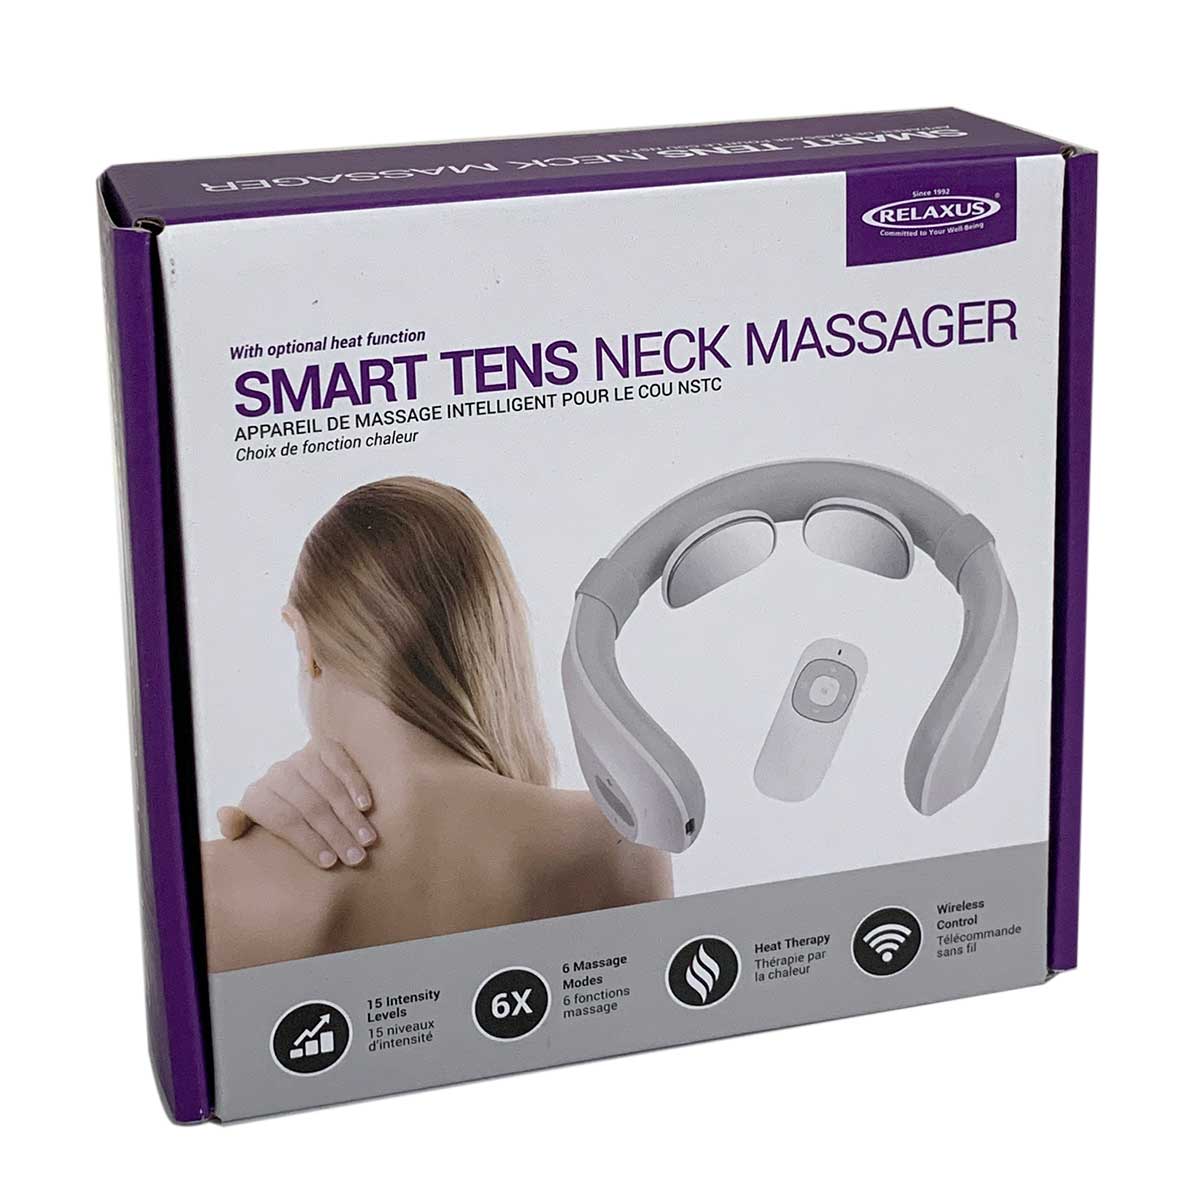 Neck tens - Neck massager